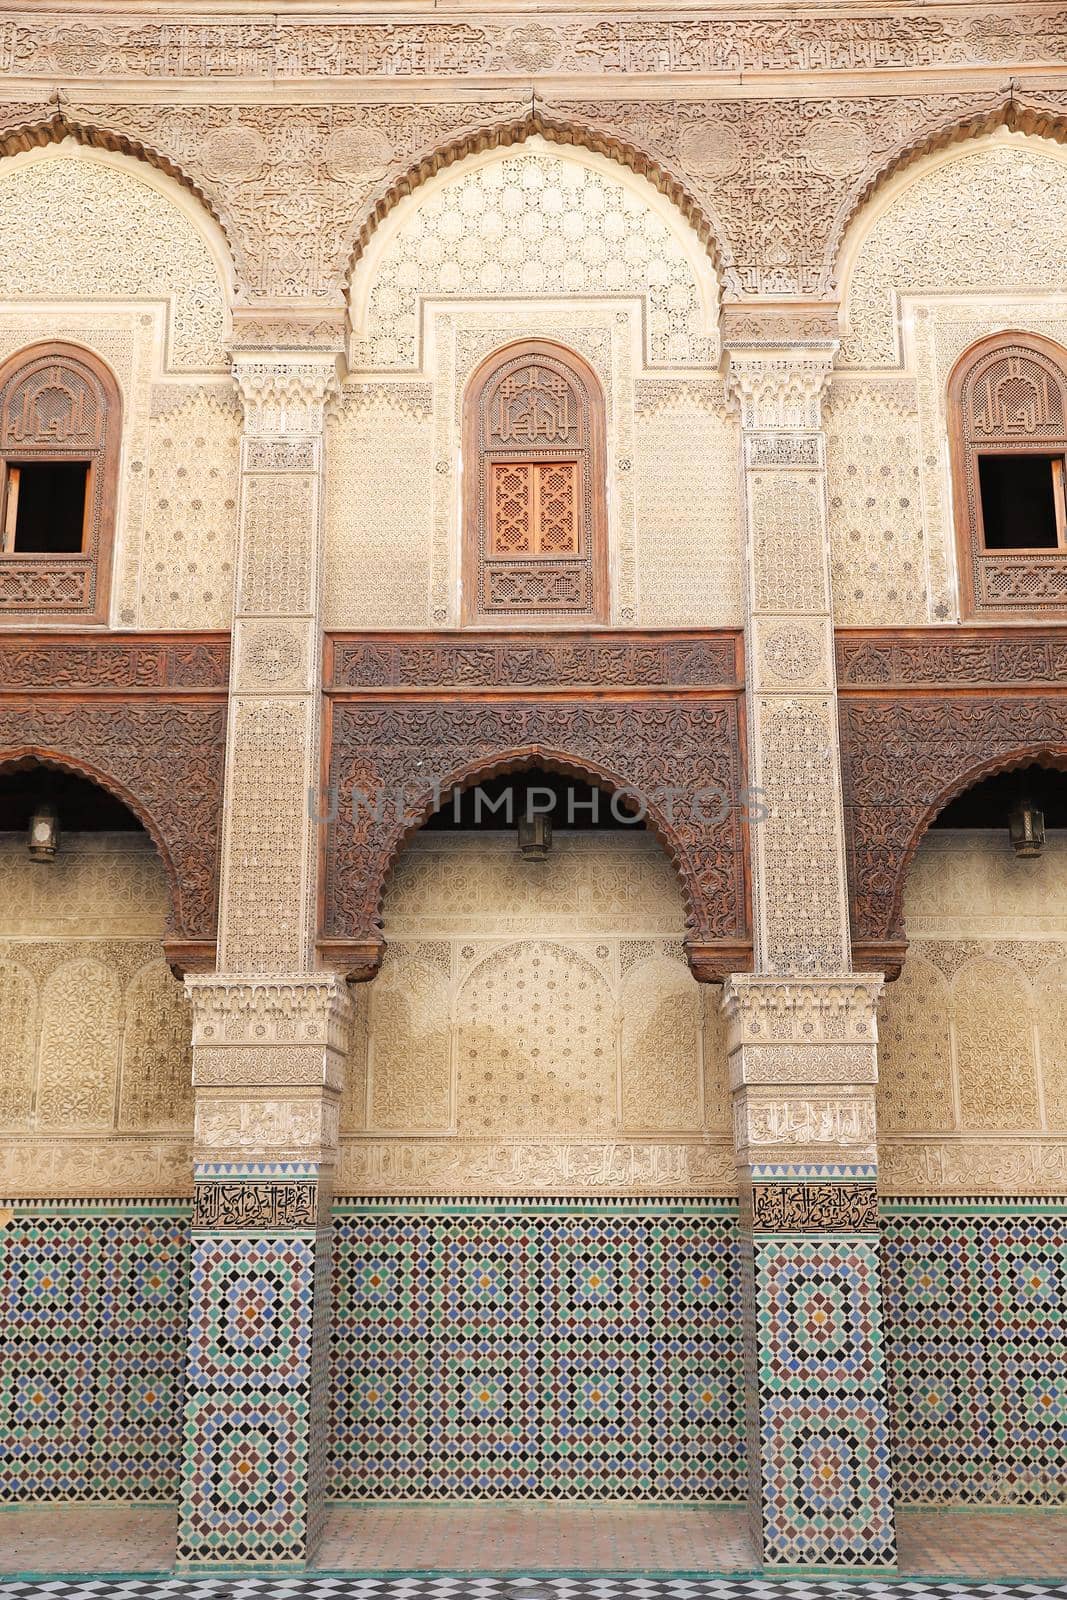 Bou Inania Madrasa in Fez, Morocco by EvrenKalinbacak